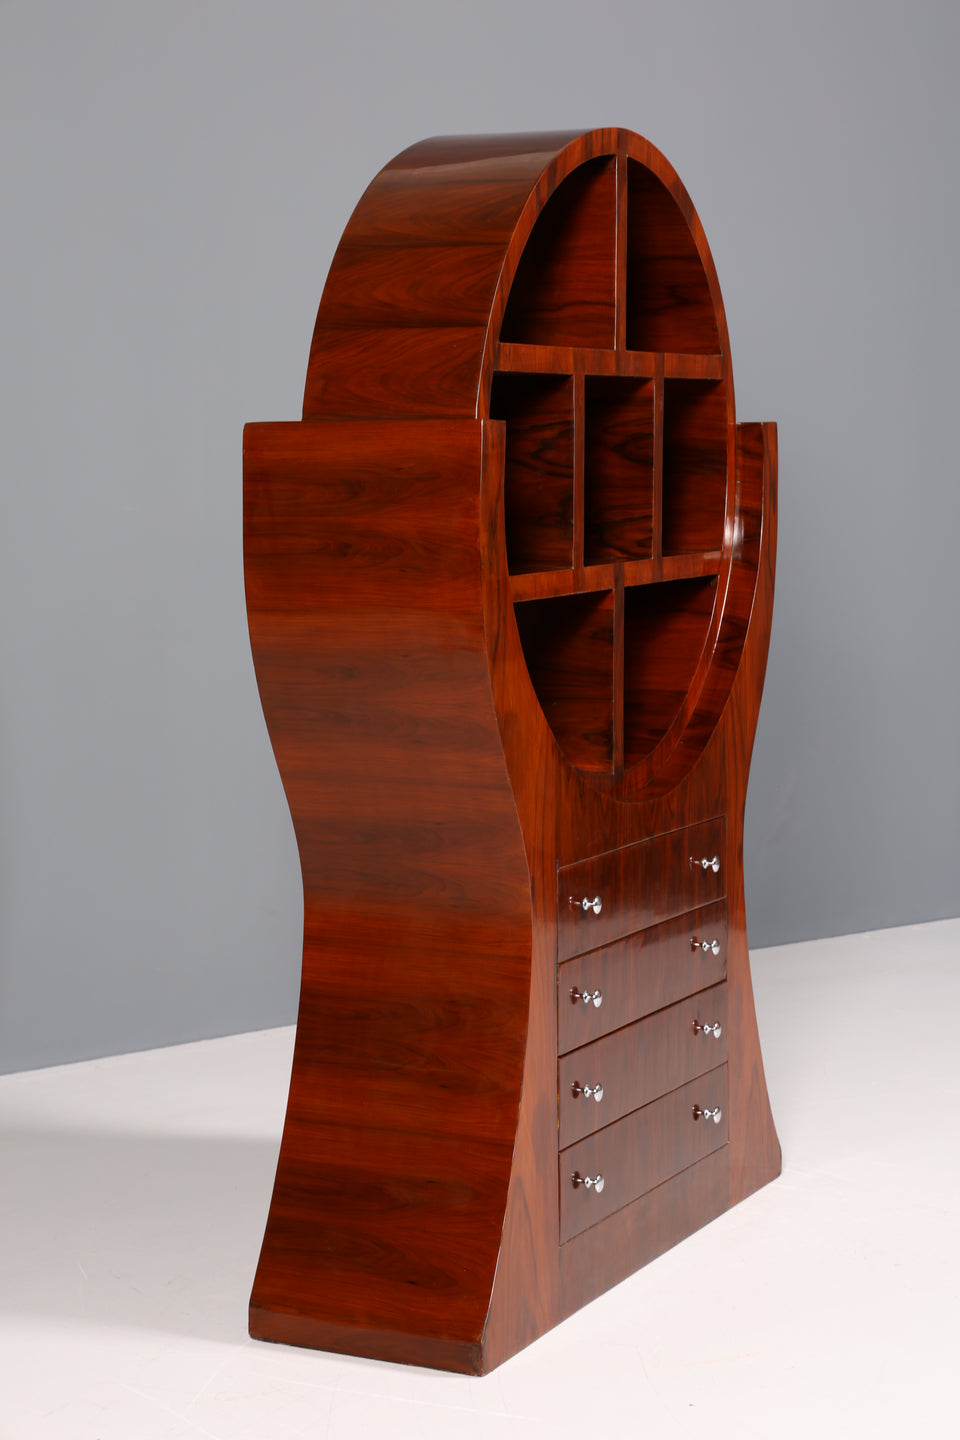 Aussergewöhnliches Art Deco Design Bücherregal Luxus Regal Kommode